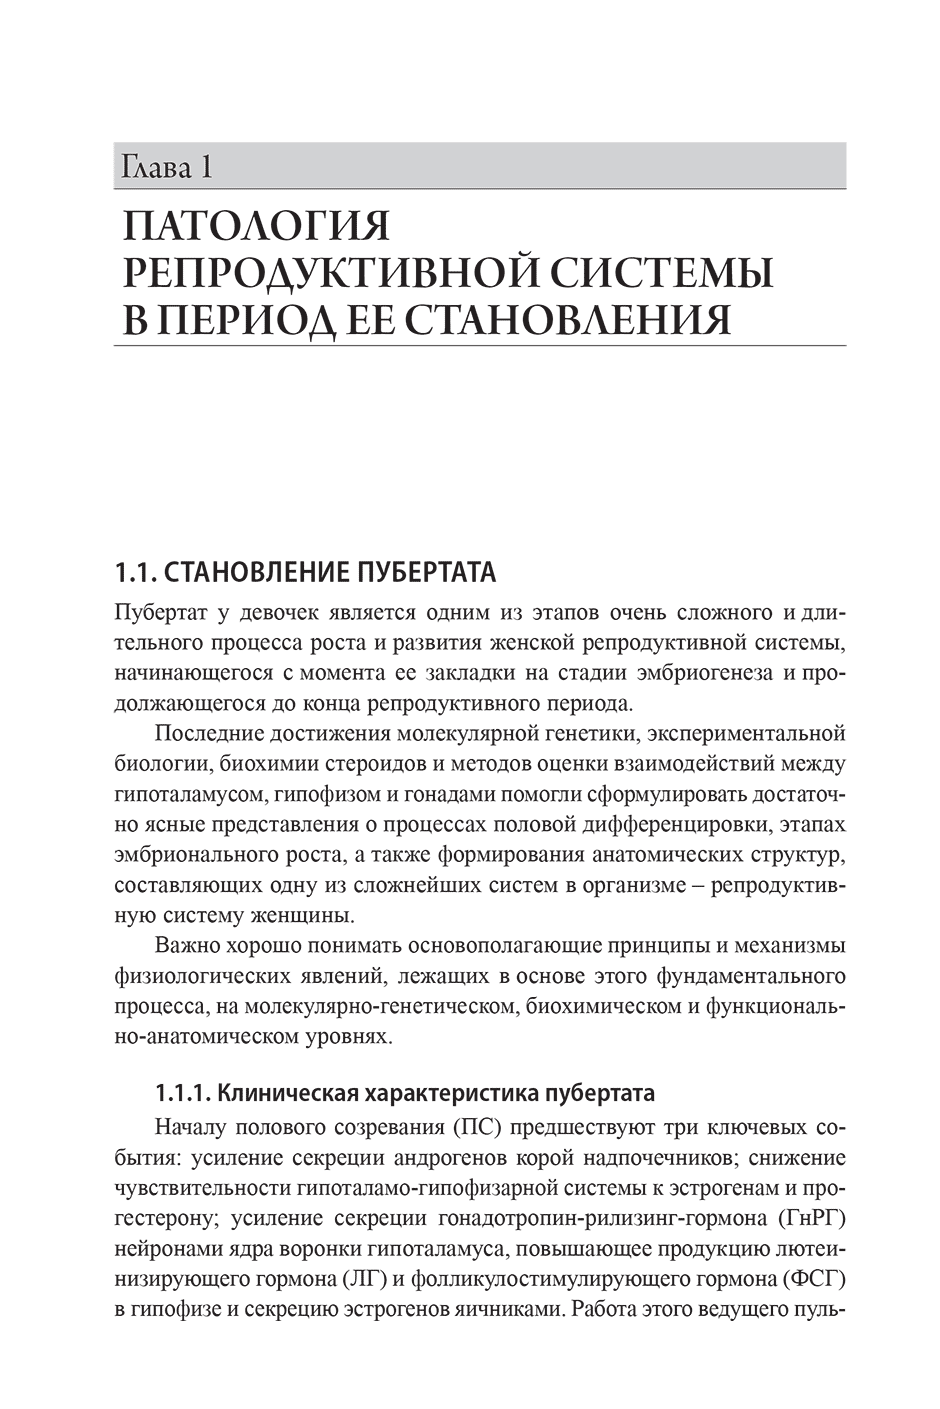 Пример страницы из книги "Эндокринная гинекология: избранные семинары" - Е. Н. Андреева, О. Р. Григорян